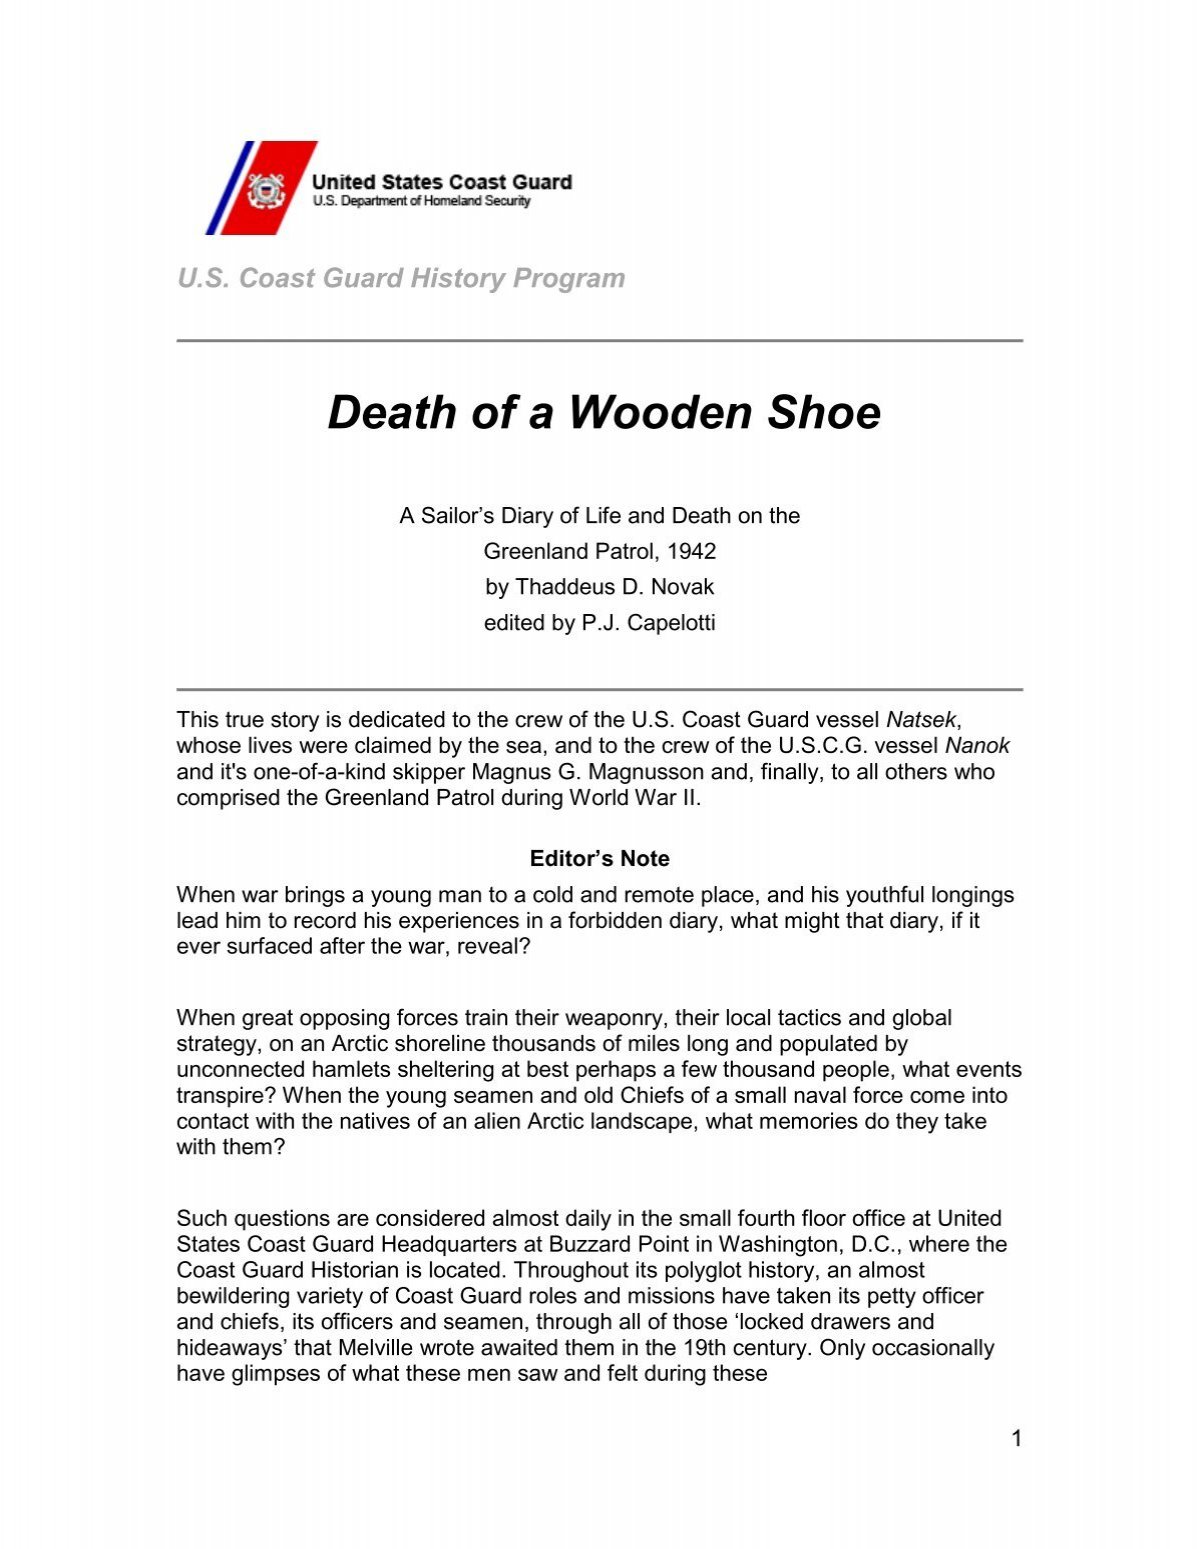 Death of a Wooden Shoe - U.S. Coast Guard